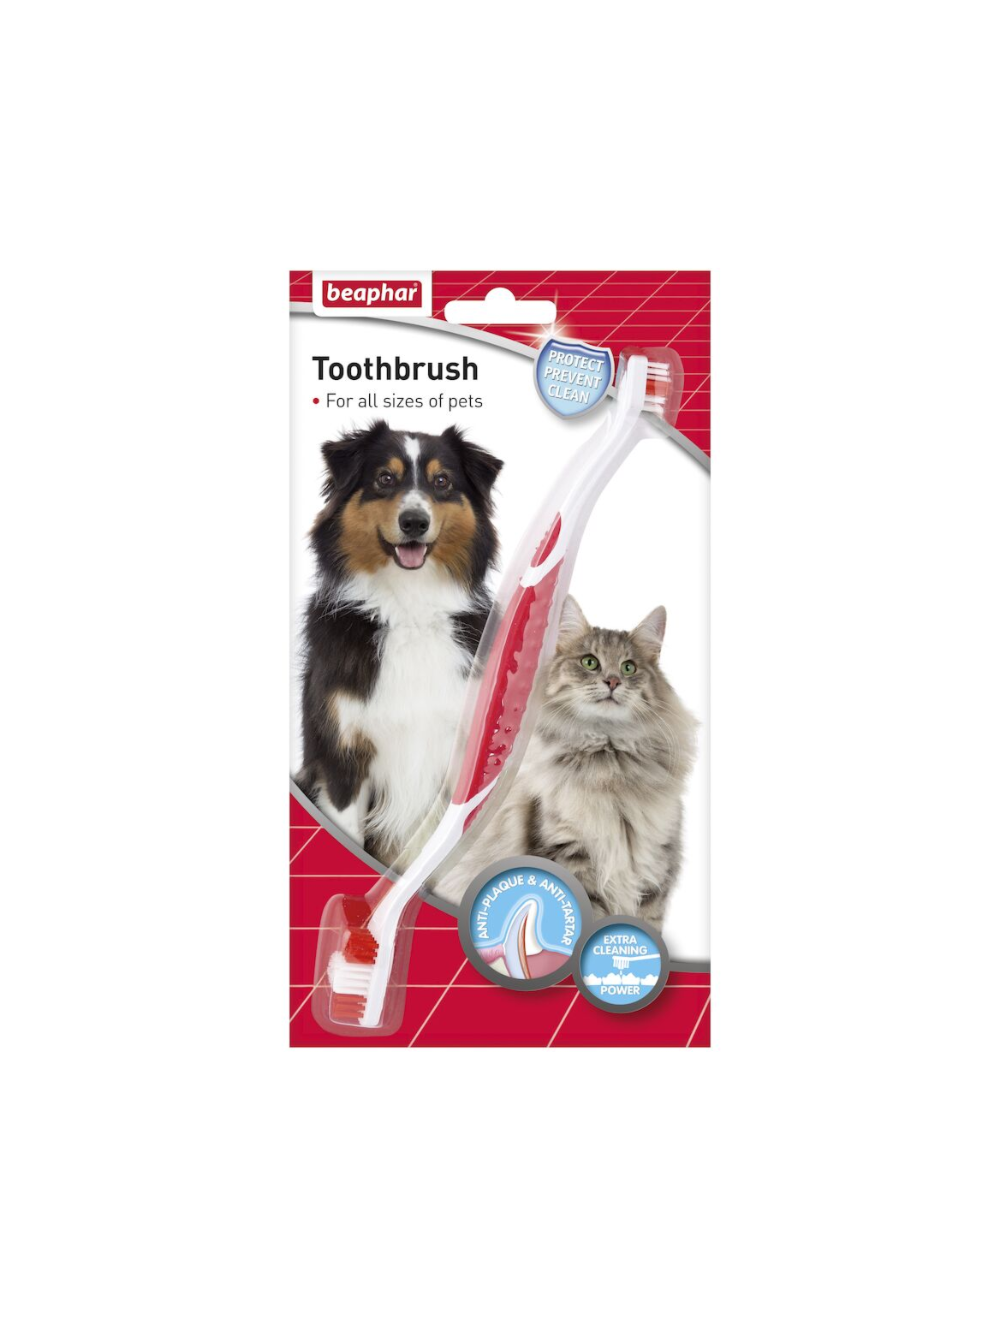 Beaphar Toothbrush for Cats & Dogs - Beaphar